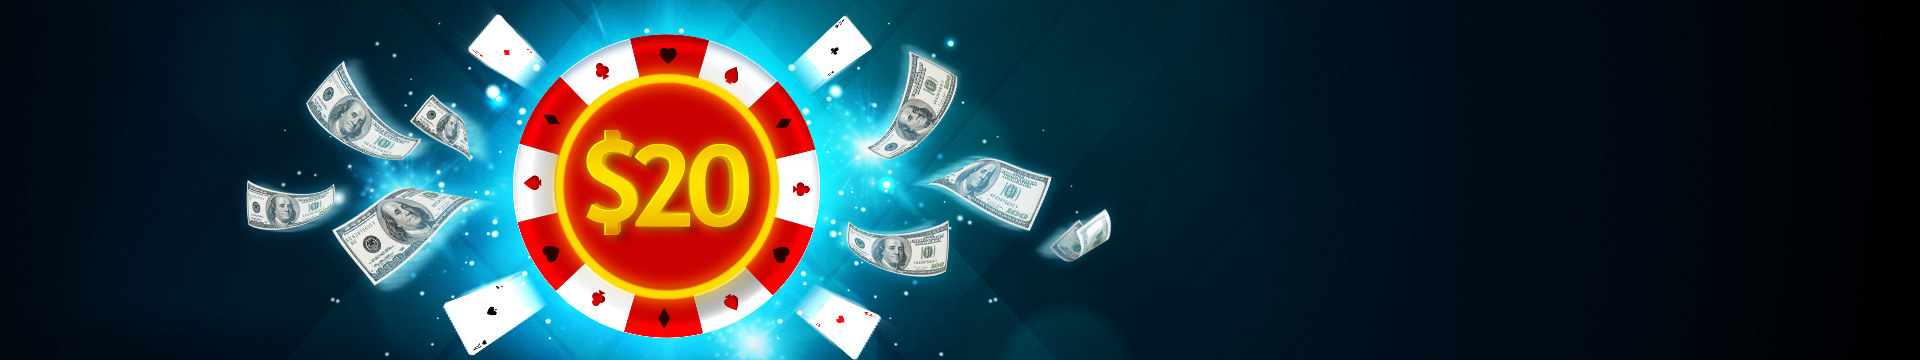 Online Poker Promotion: Poker Welcome Bonus